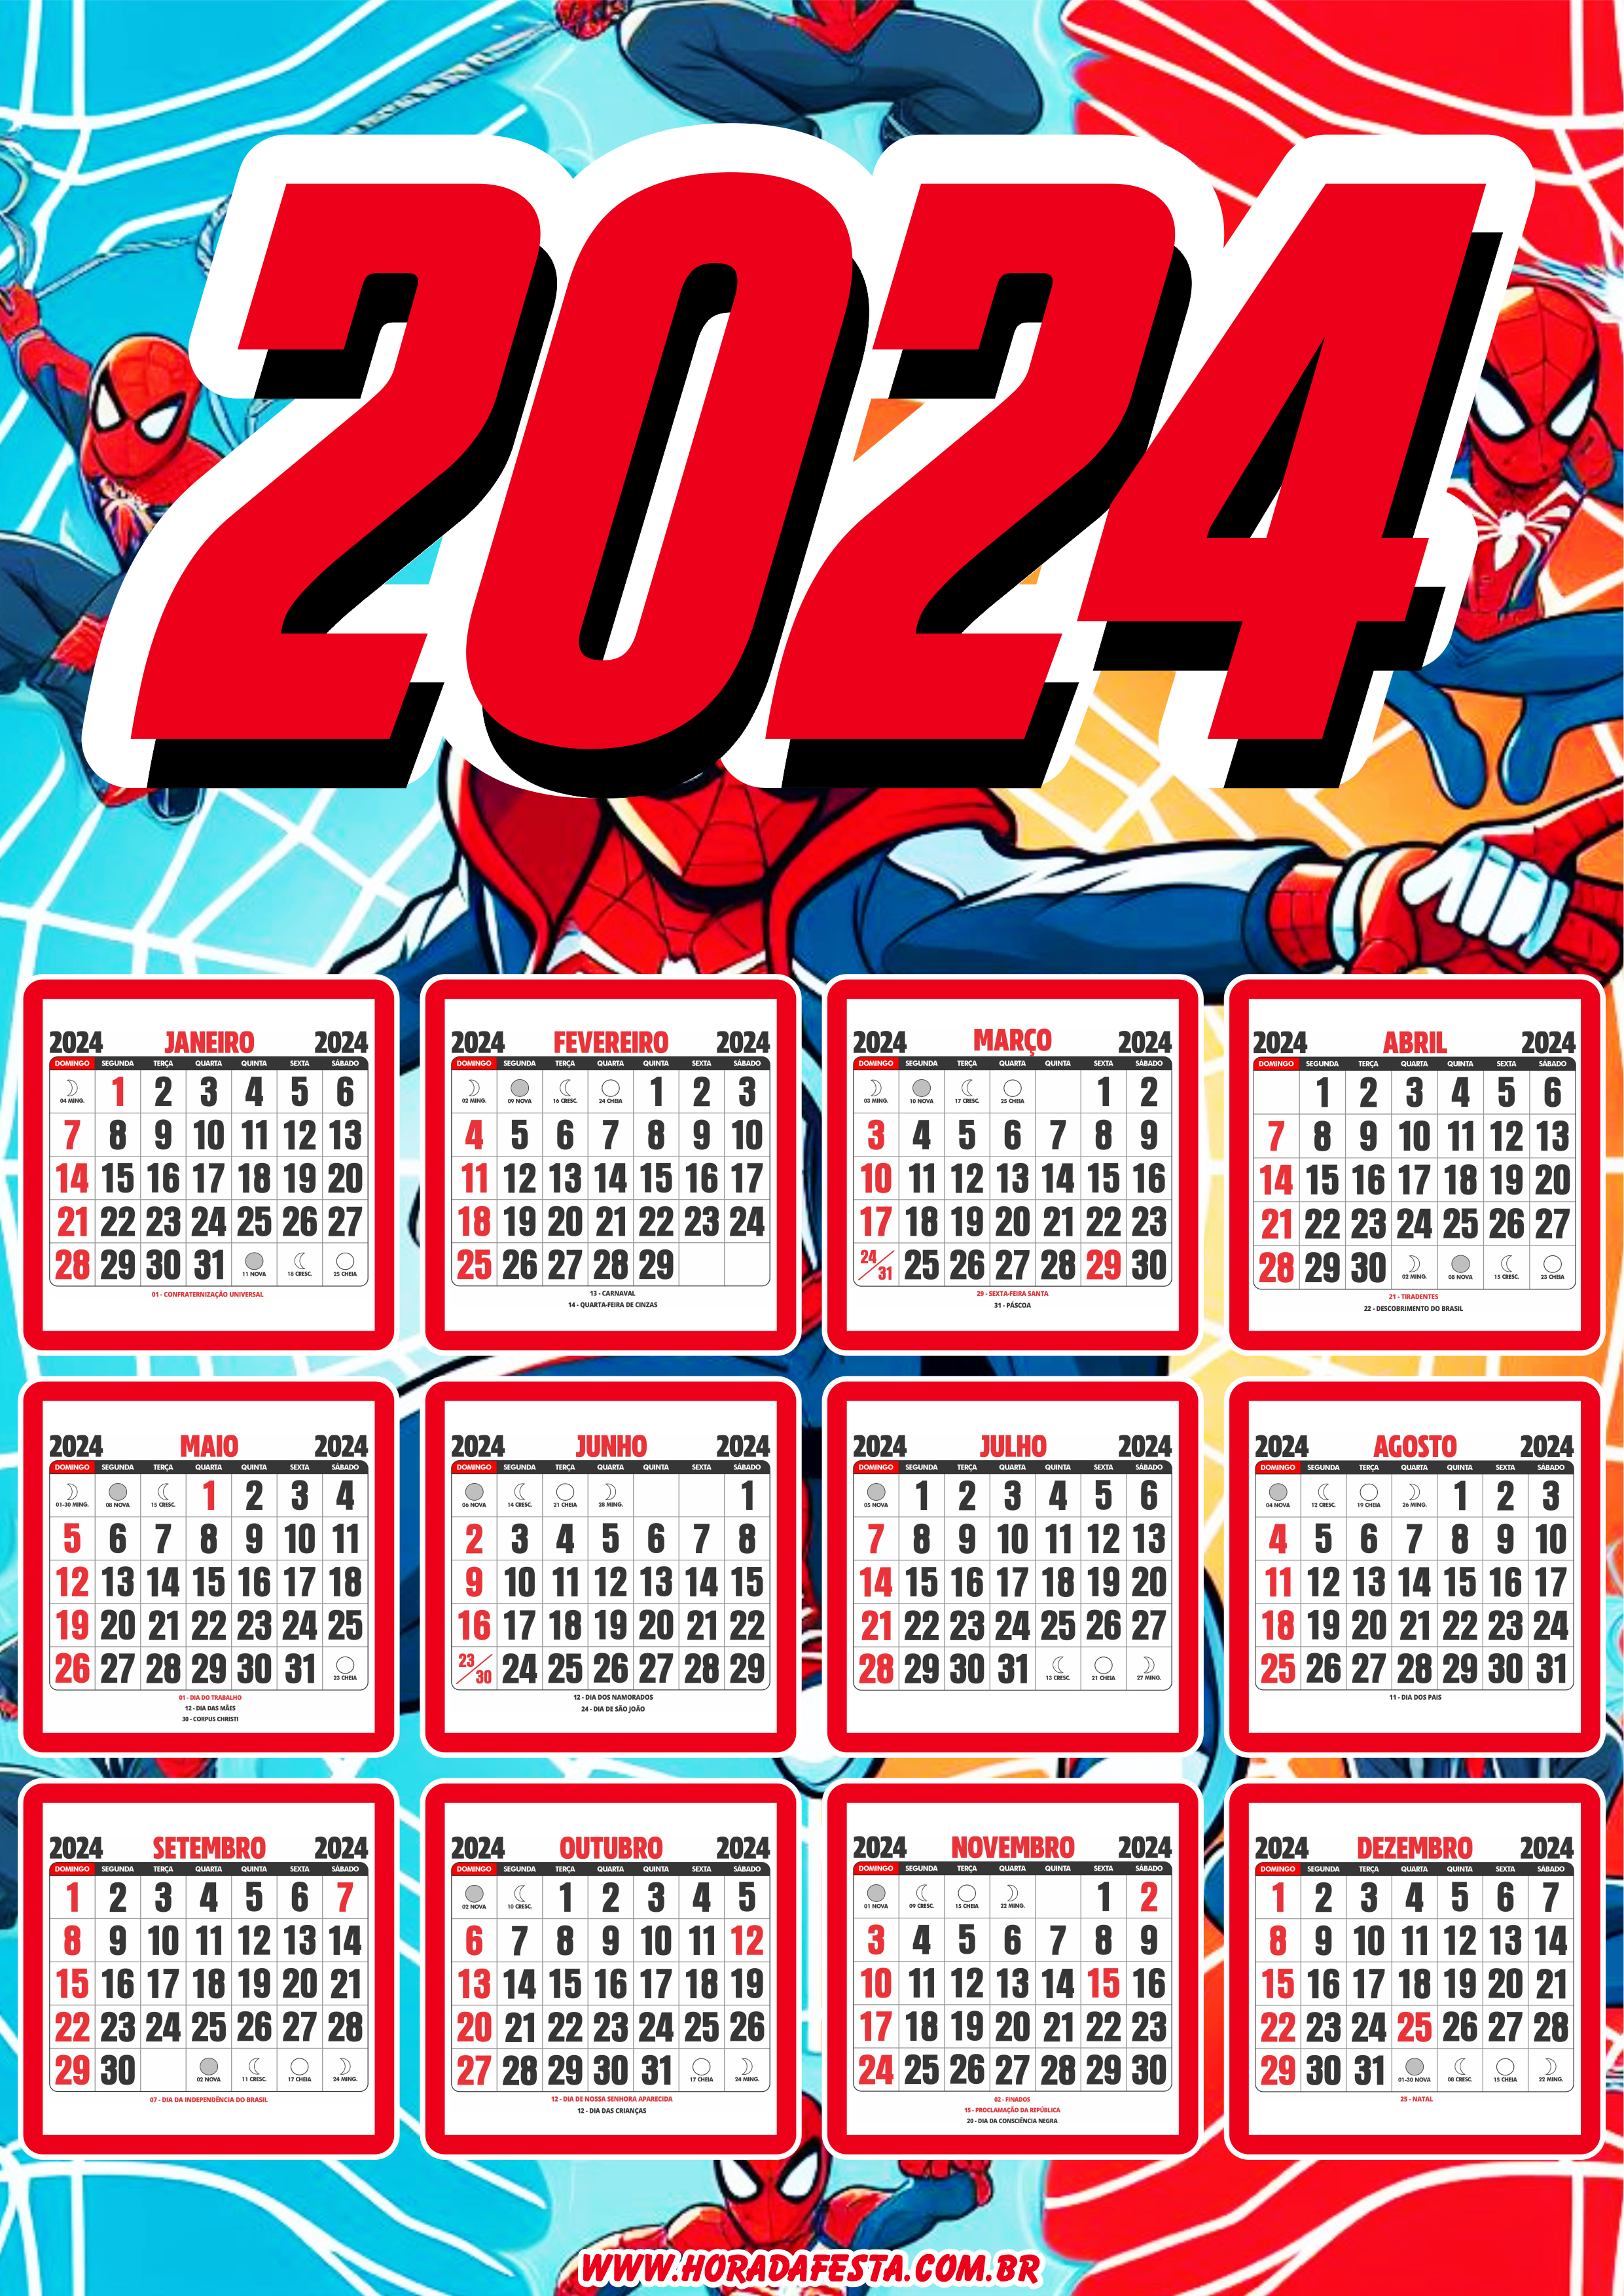 Calendário 2024 personalizado homem aranha spider man png